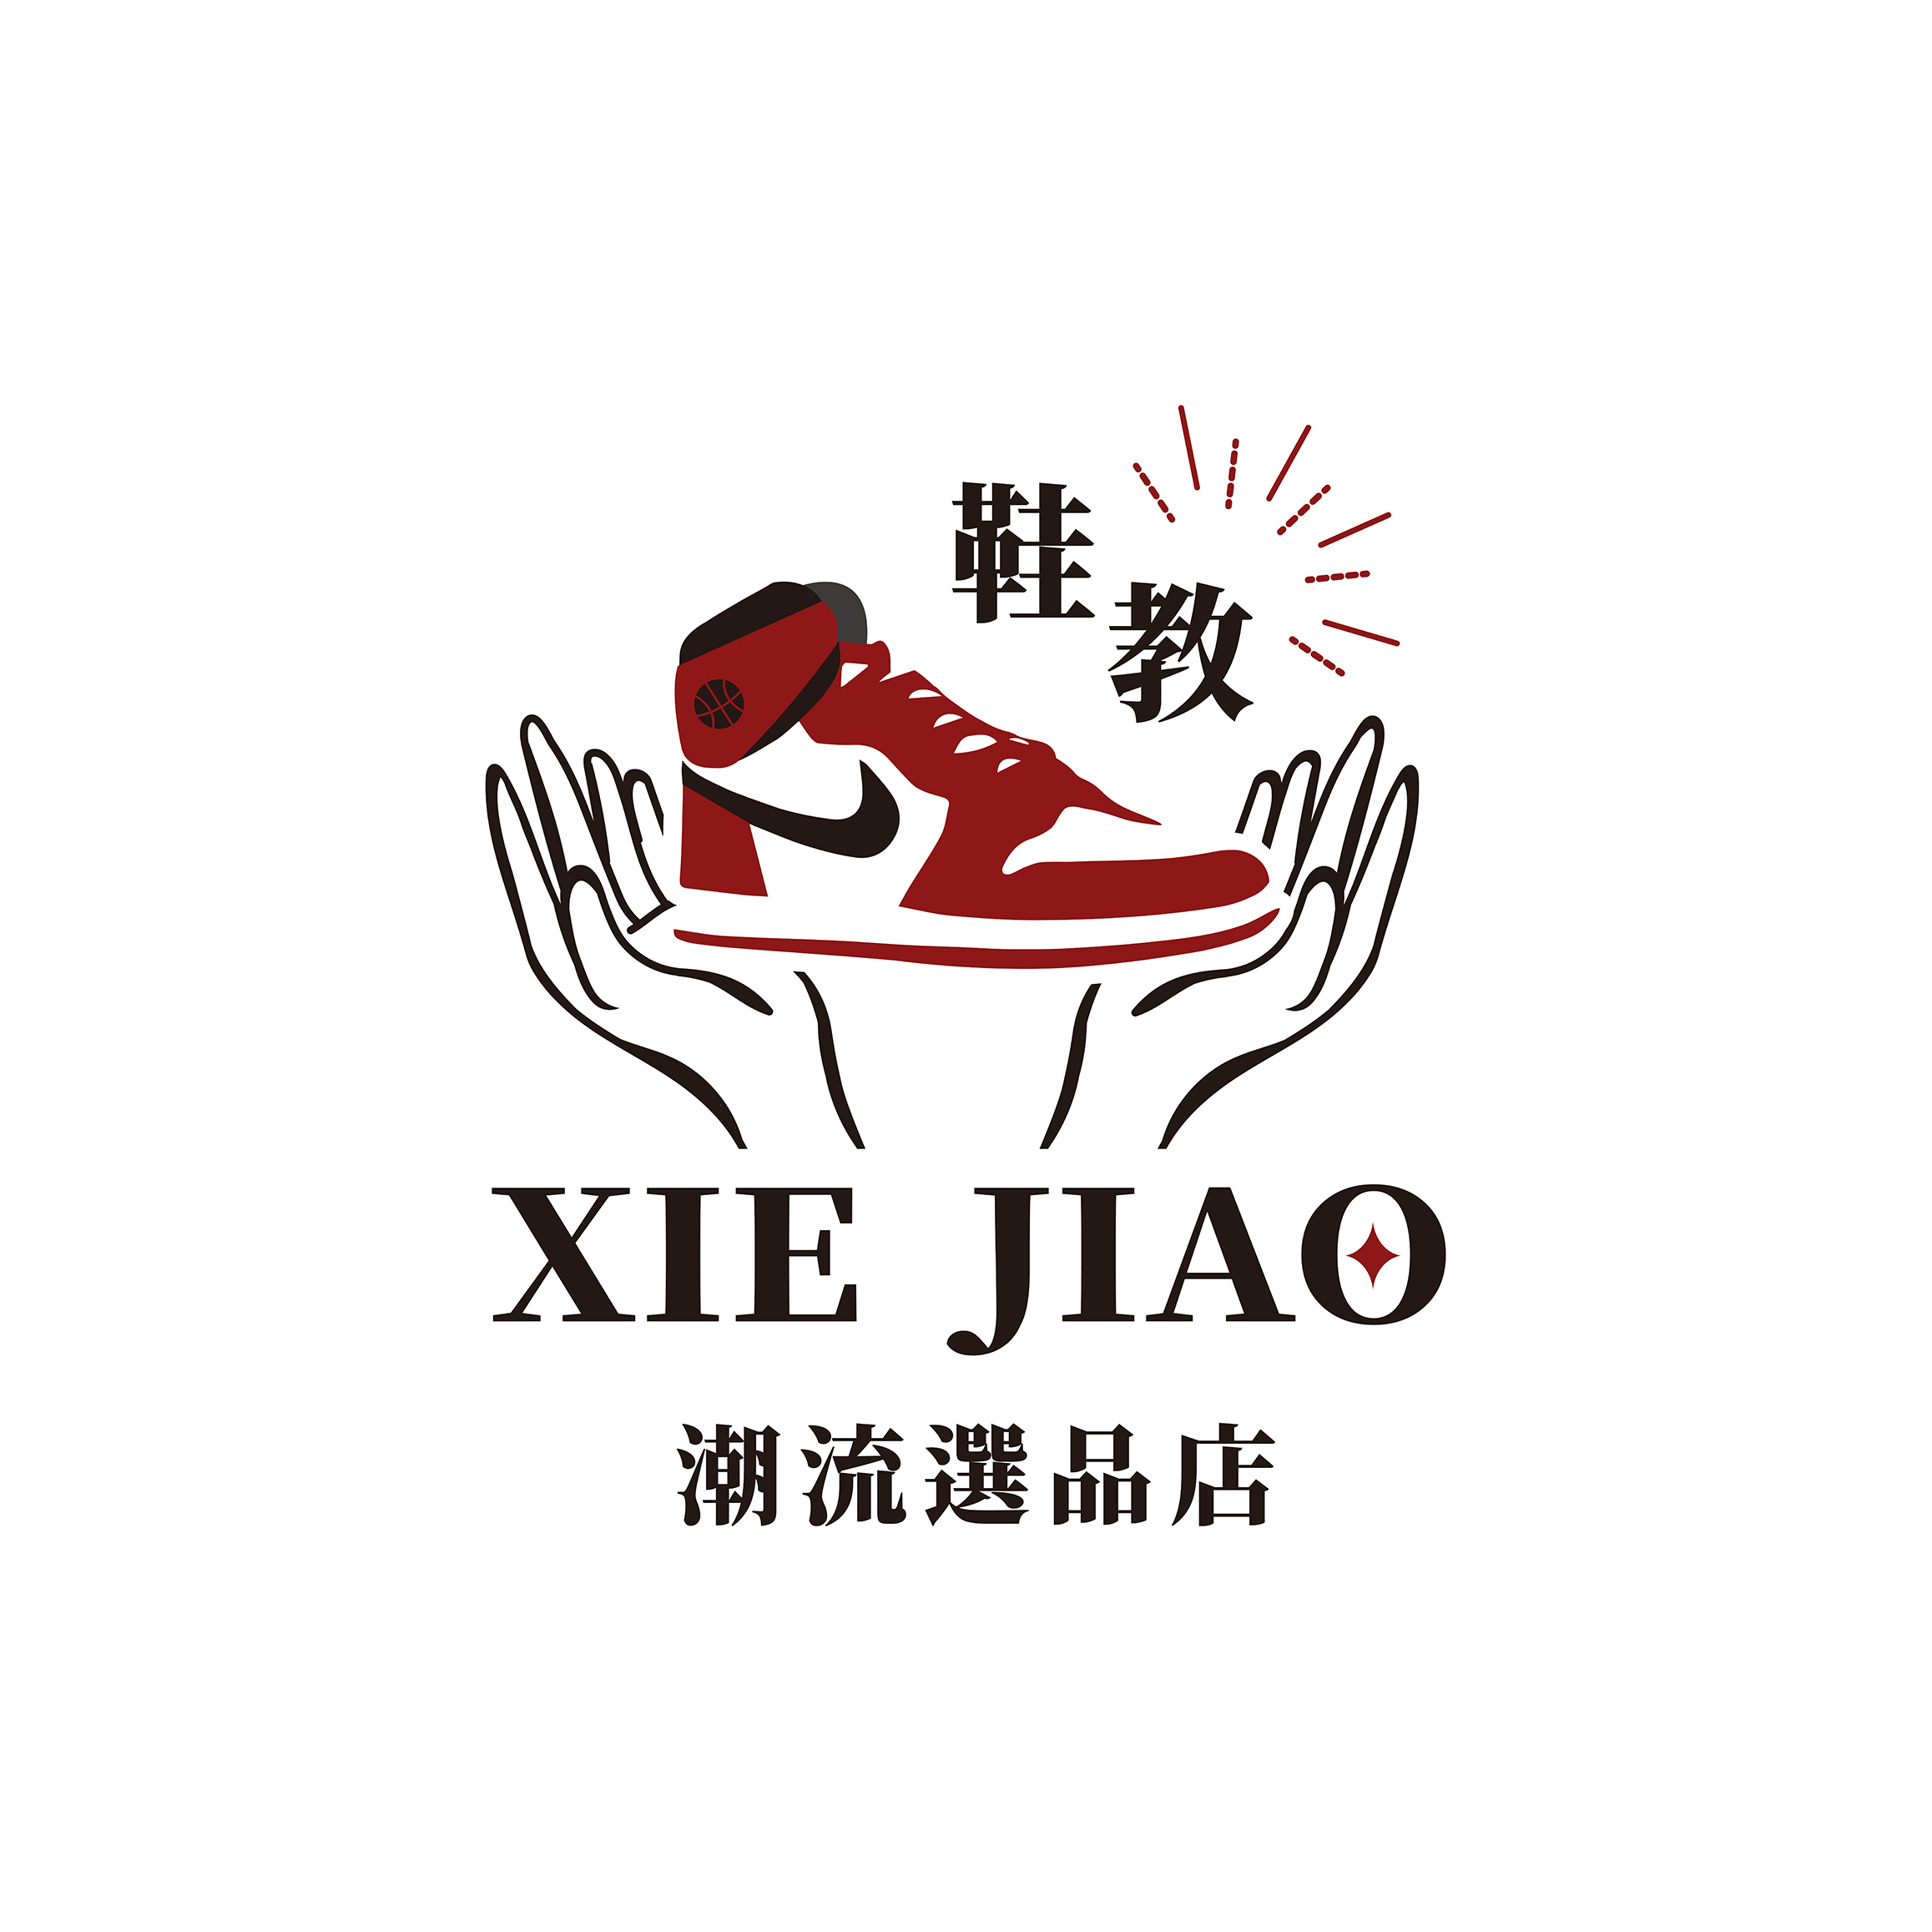 XIE JIAO 鞋教 潮流選品店